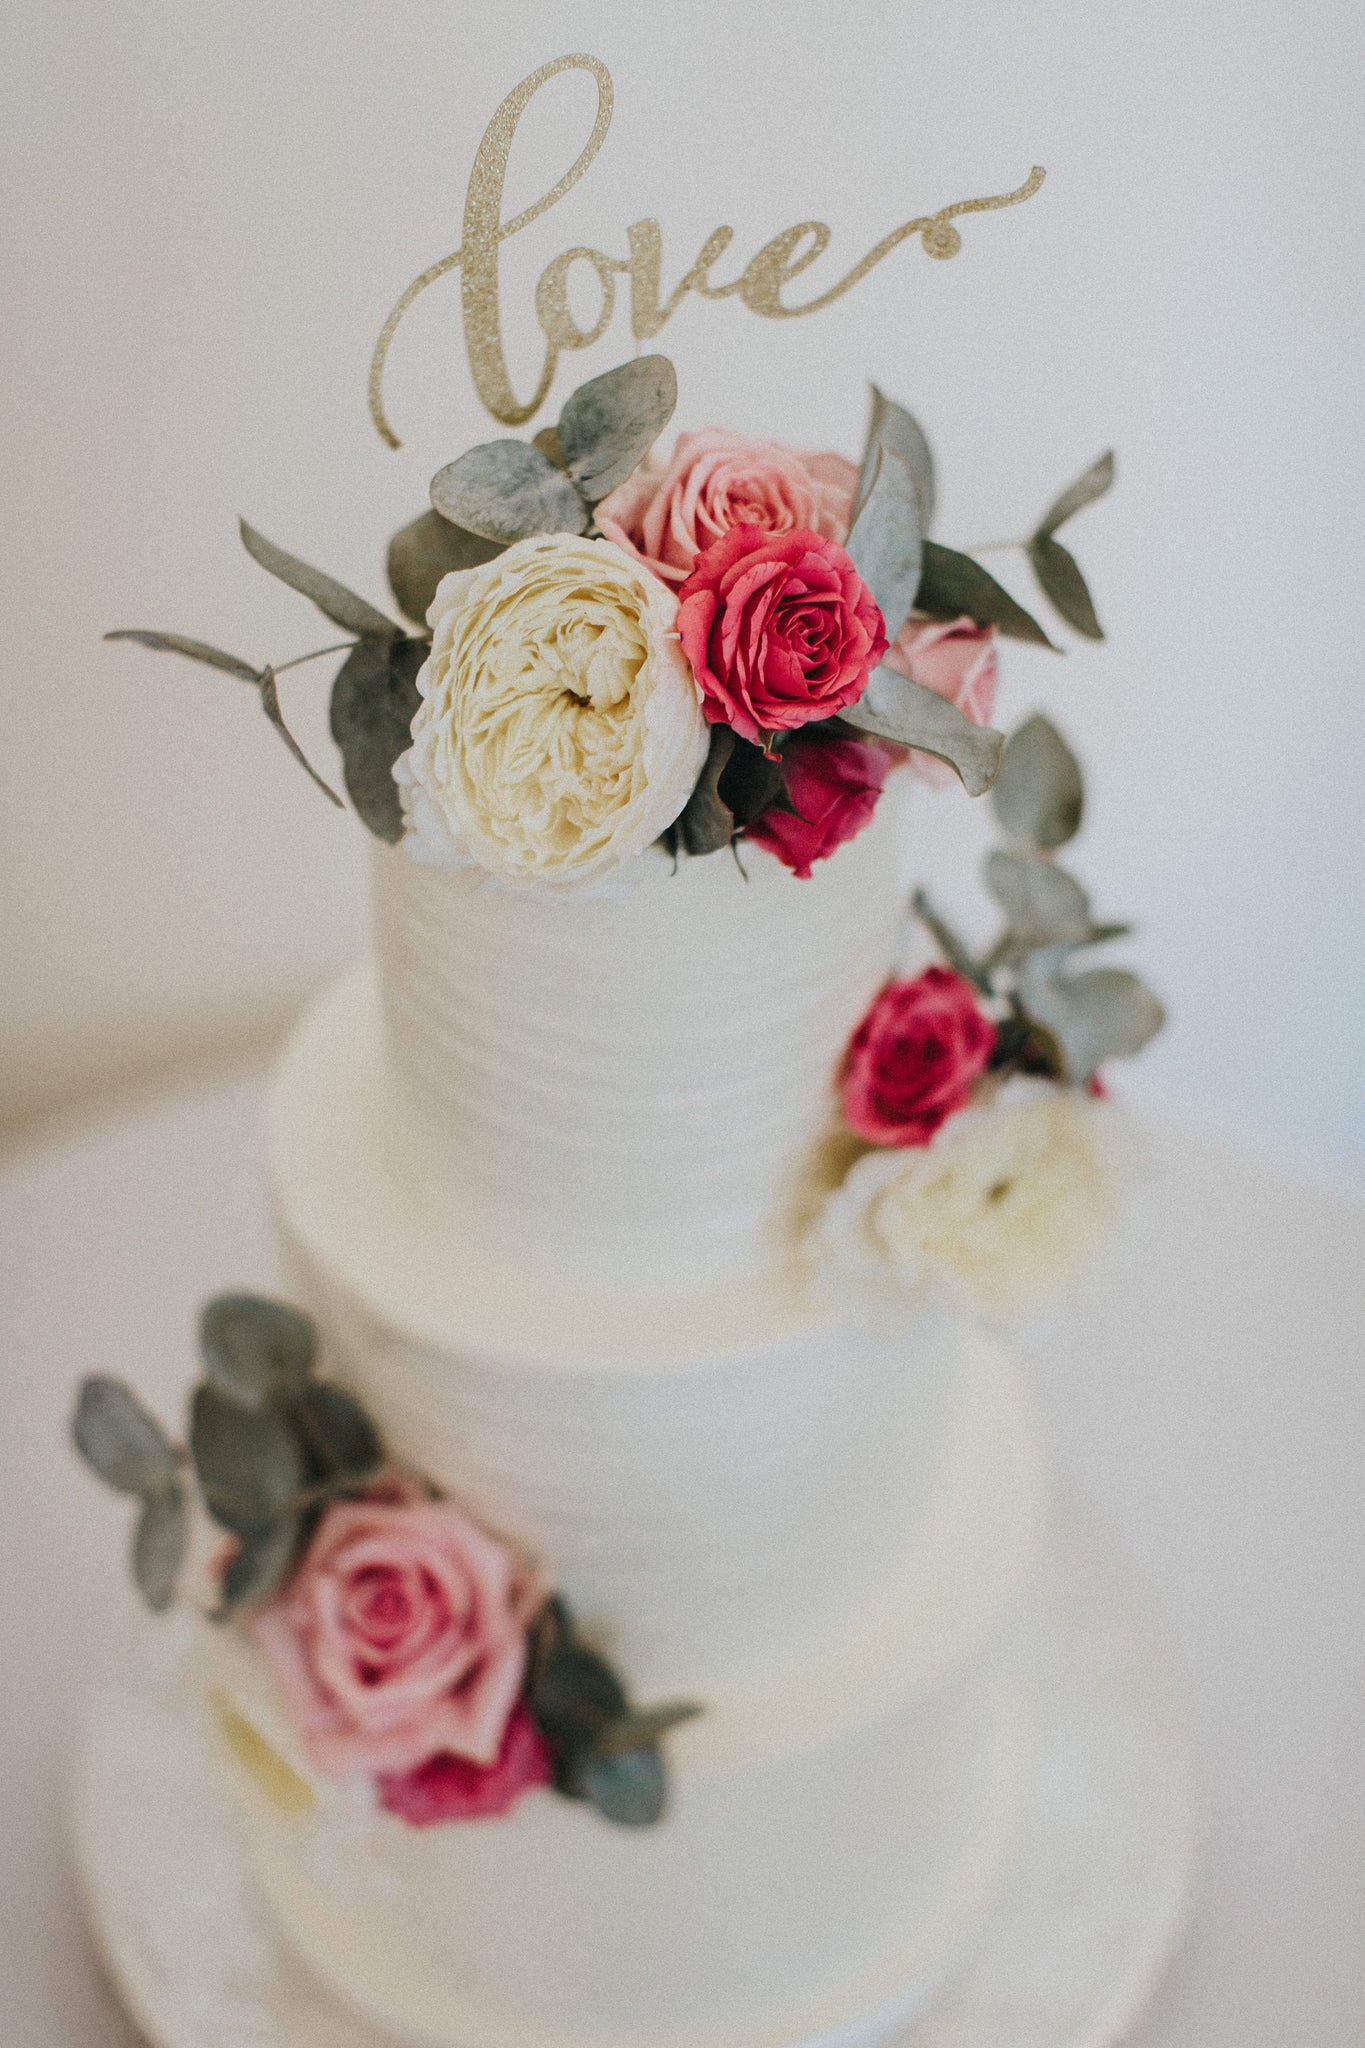 Nottingham Wedding Flowers with Wedding Cake